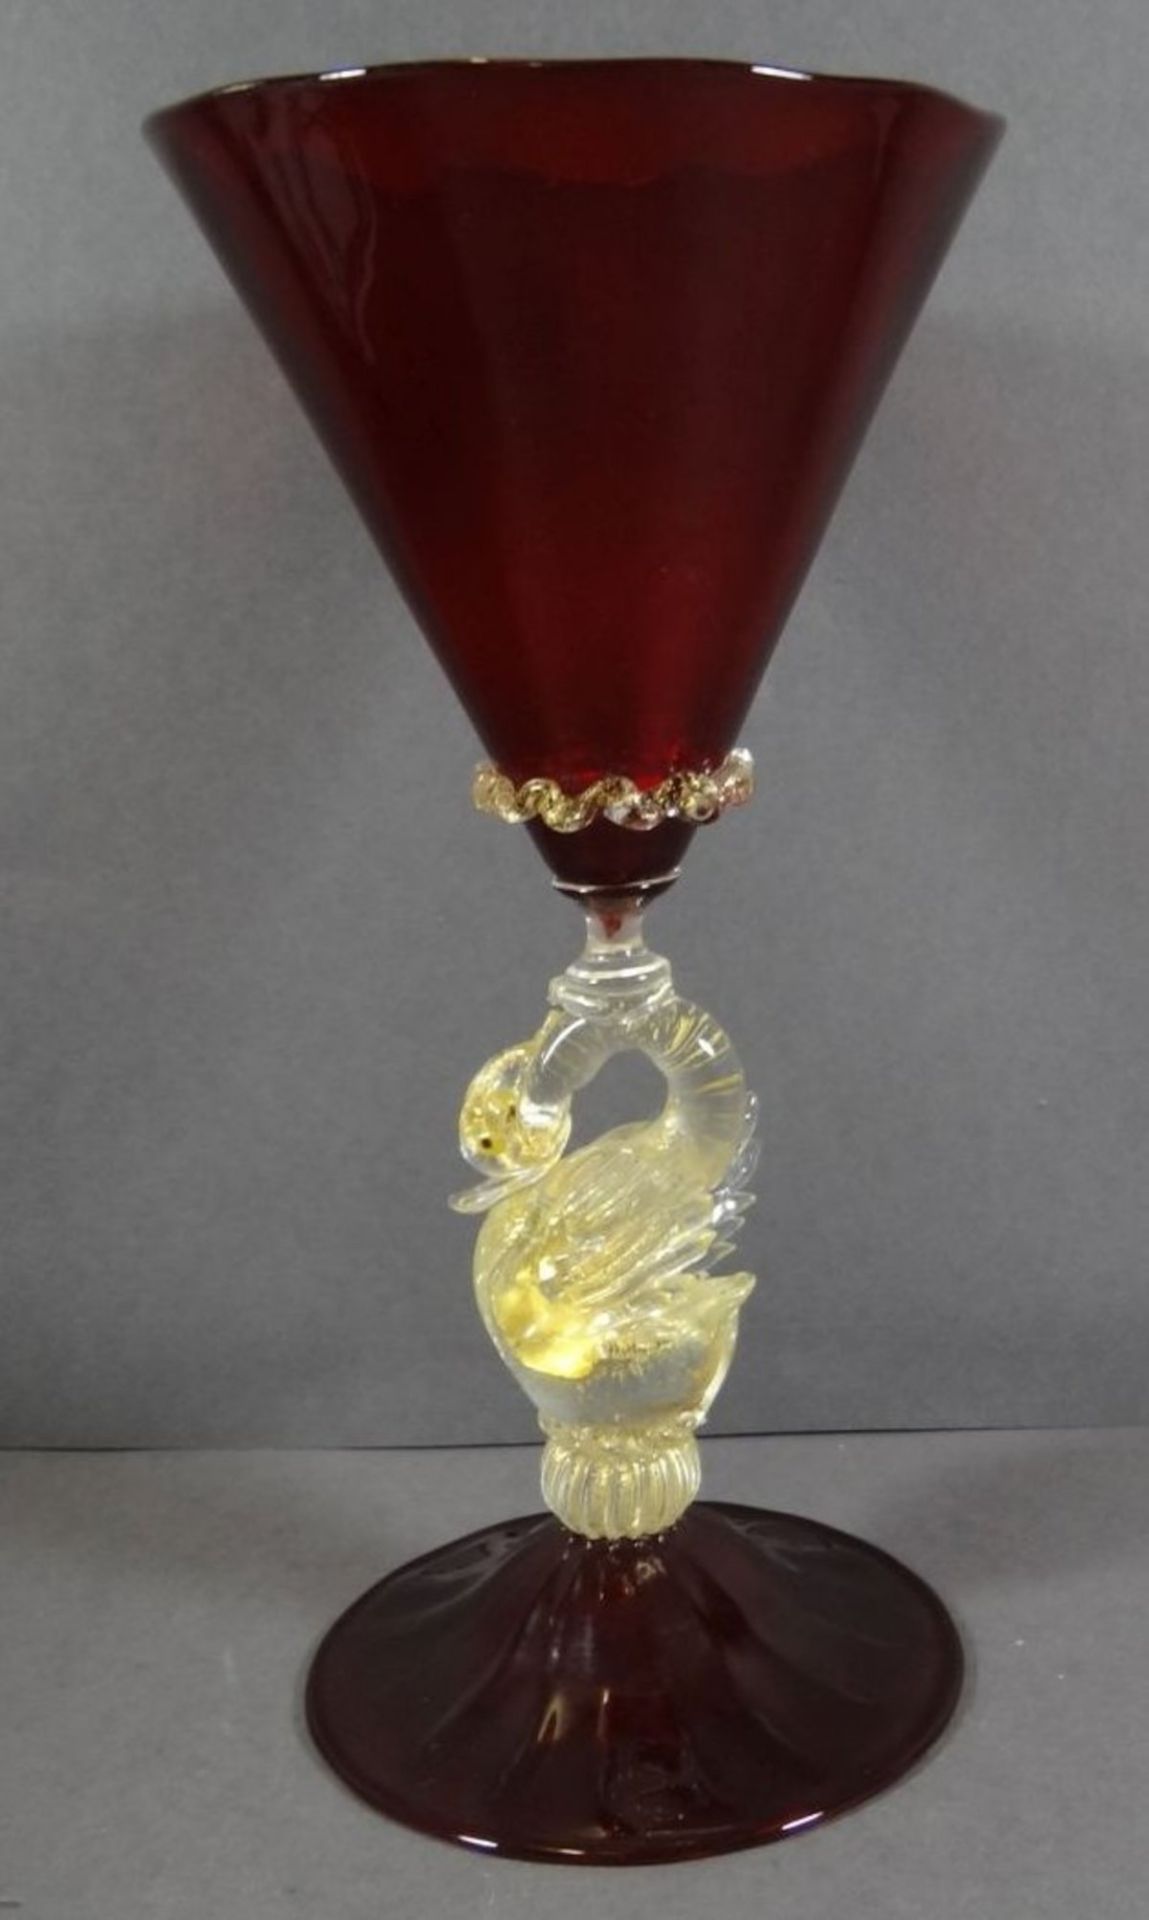 gr. Pokal "Murano" rotes Glas, Griff als Schwan, klar mit Goldflitter, H-21 cm - Bild 3 aus 6